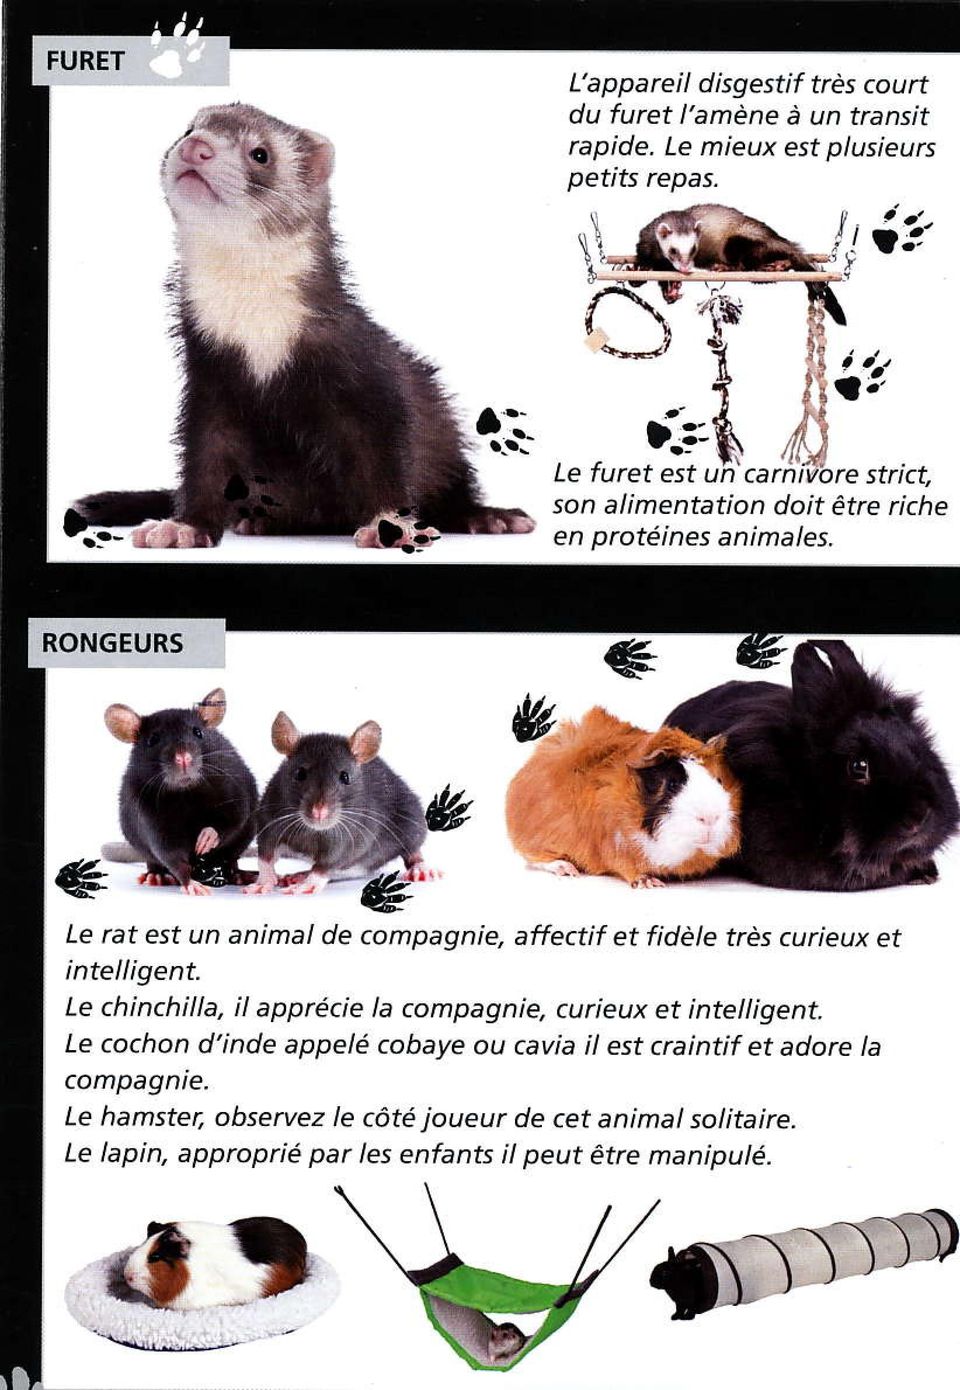 RONGEURS Le rat est un animal de compagnie, affectif et fidèle très curieux et intelligent. Le chinchilla, il appécie la compègnie.